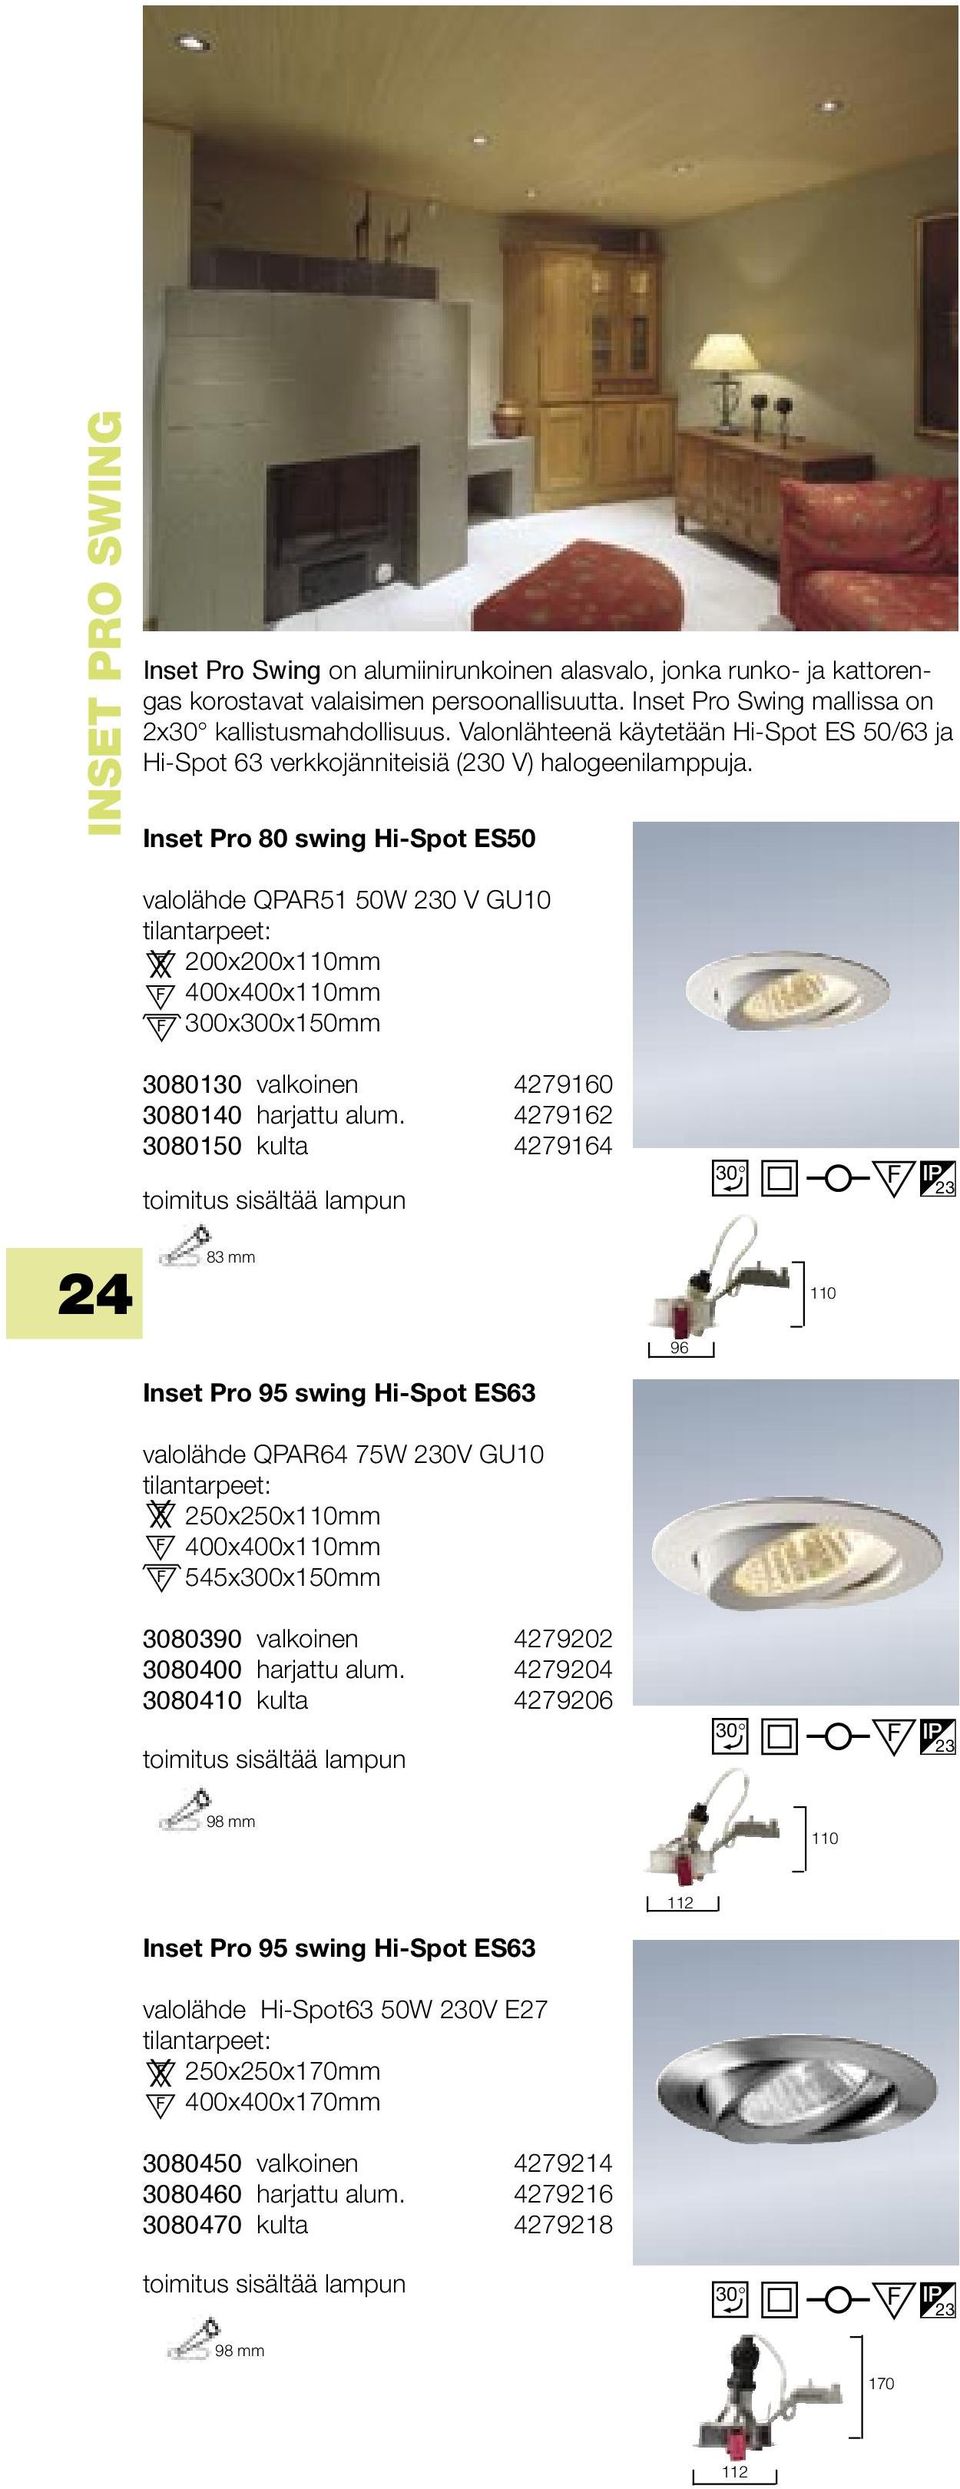 Inset Pro 80 swing Hi-Spot ES50 valolähde QPAR51 50W 230 V GU10 X 200x200x110mm 400x400x110mm 300x300x150mm 3080 valkoinen 4279160 3080140 harjattu alum.